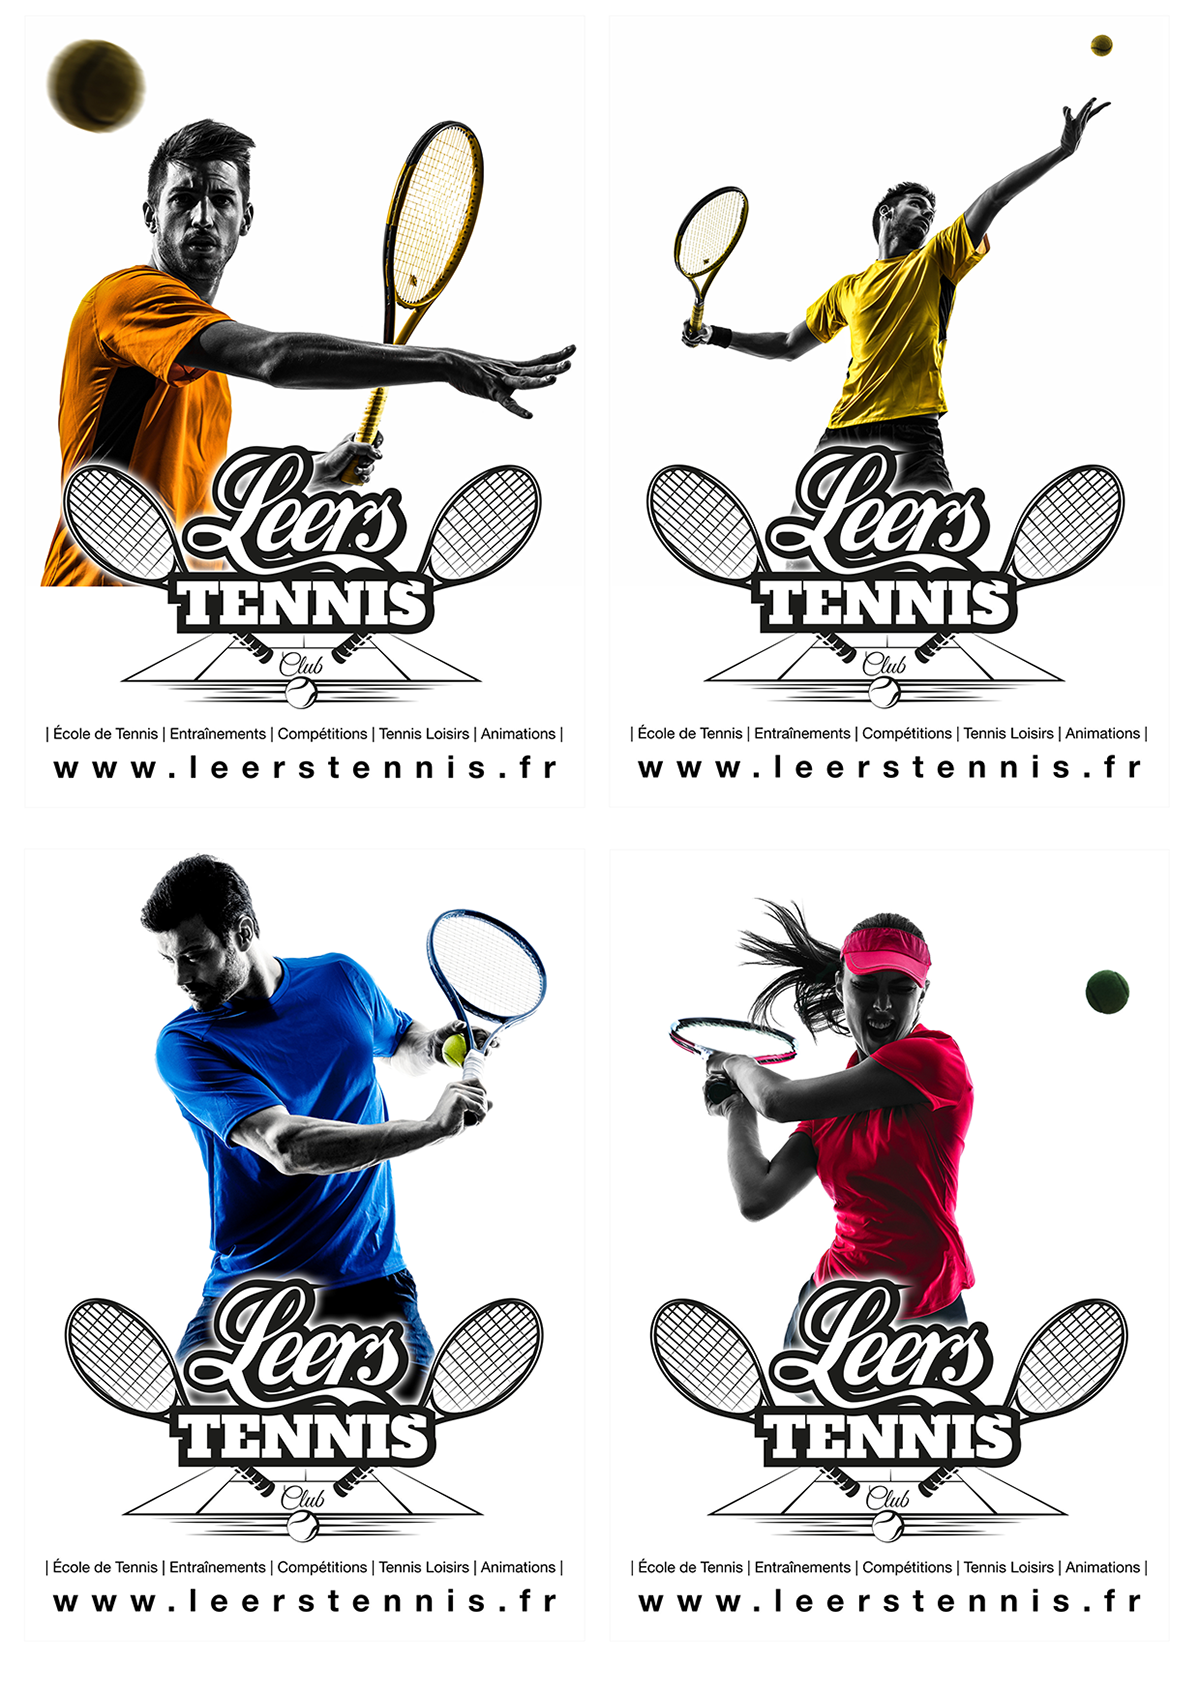 Leers tennis